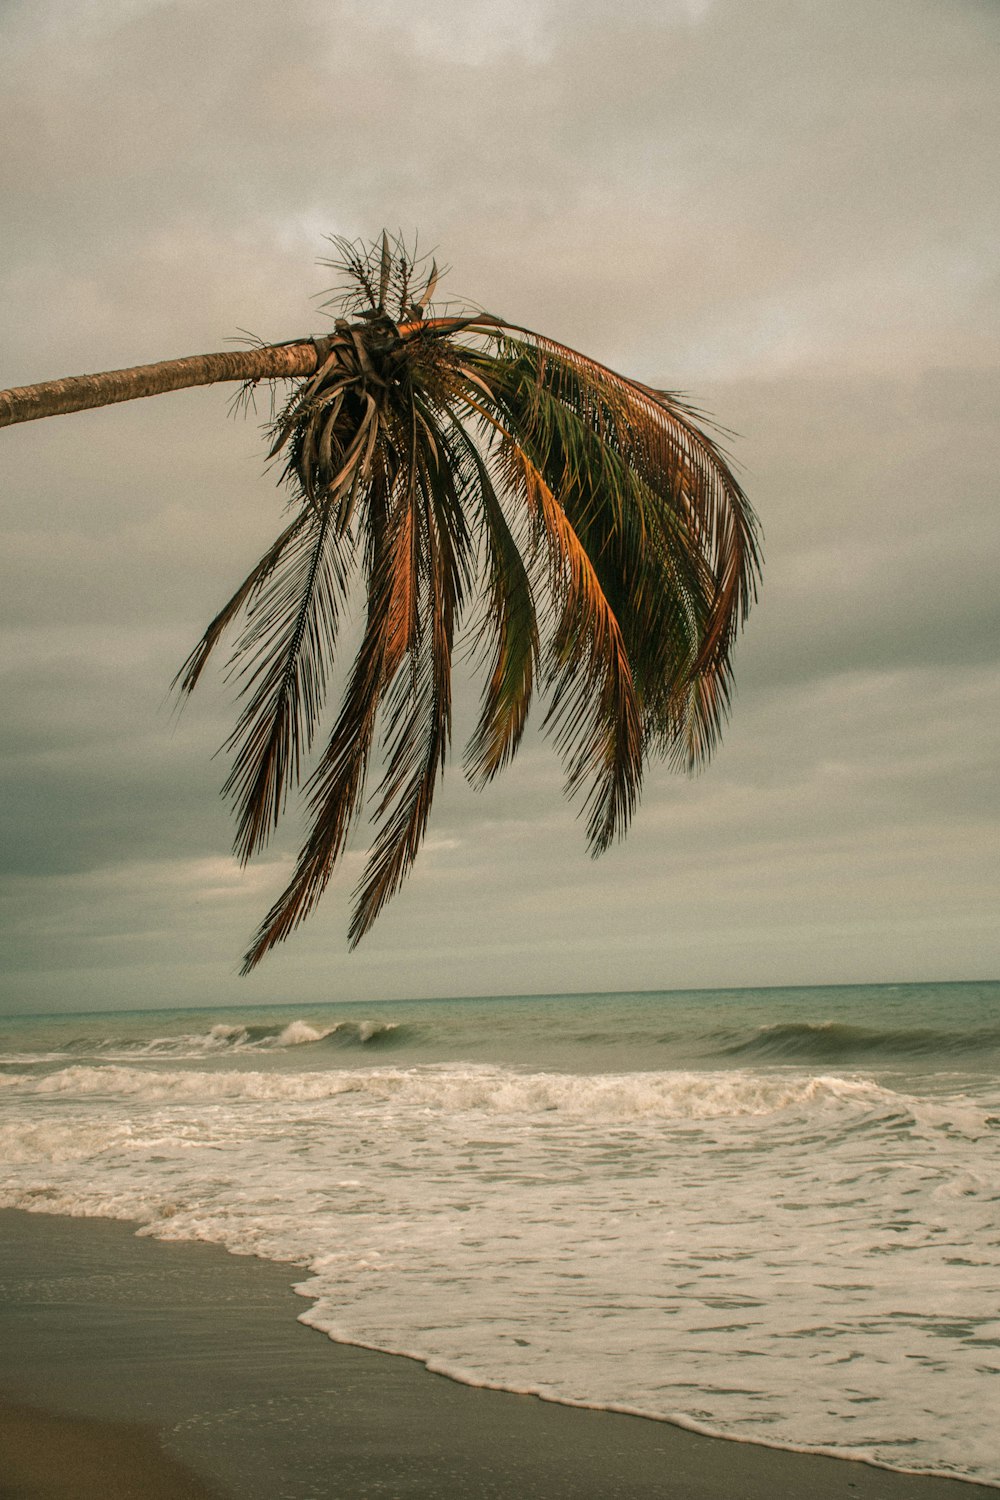 palmeira perto do mar sob o céu nublado durante o dia